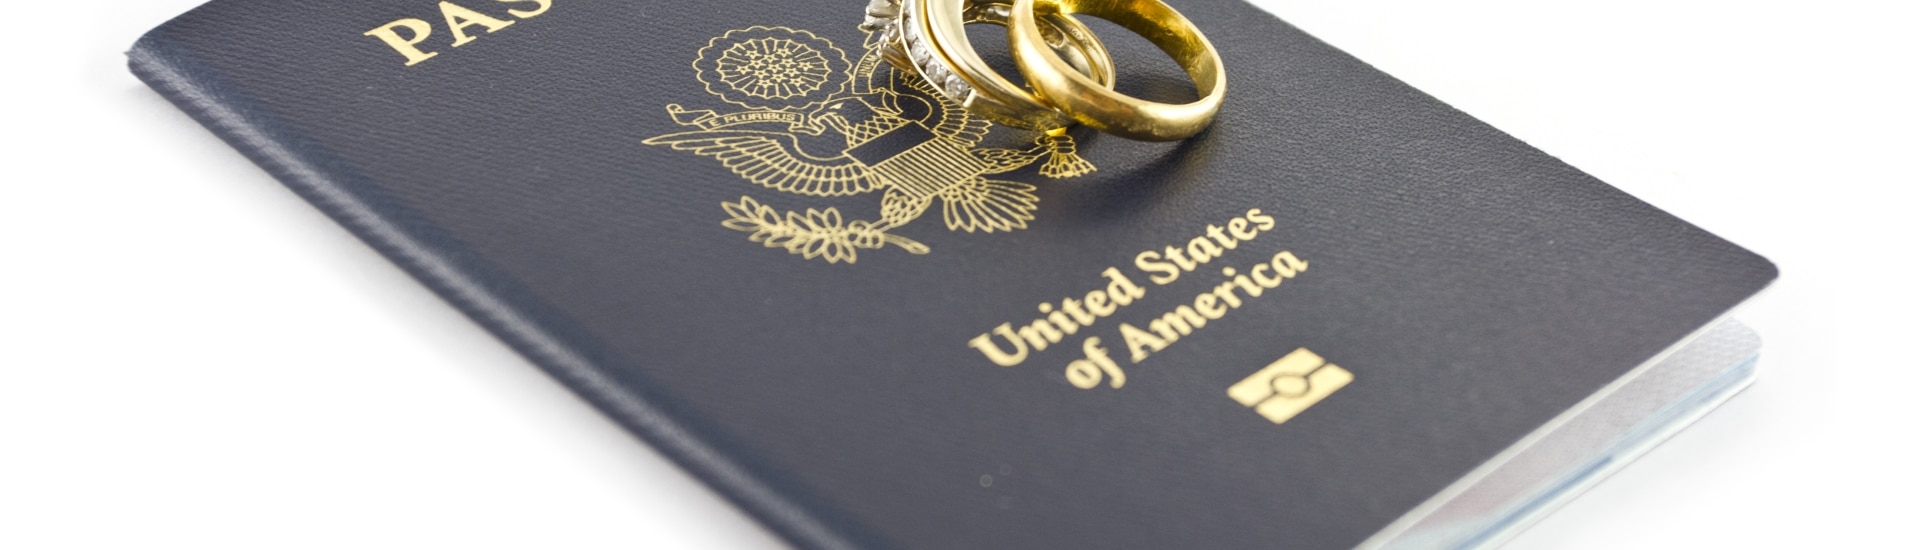 matrimonio-de-inmigrantes